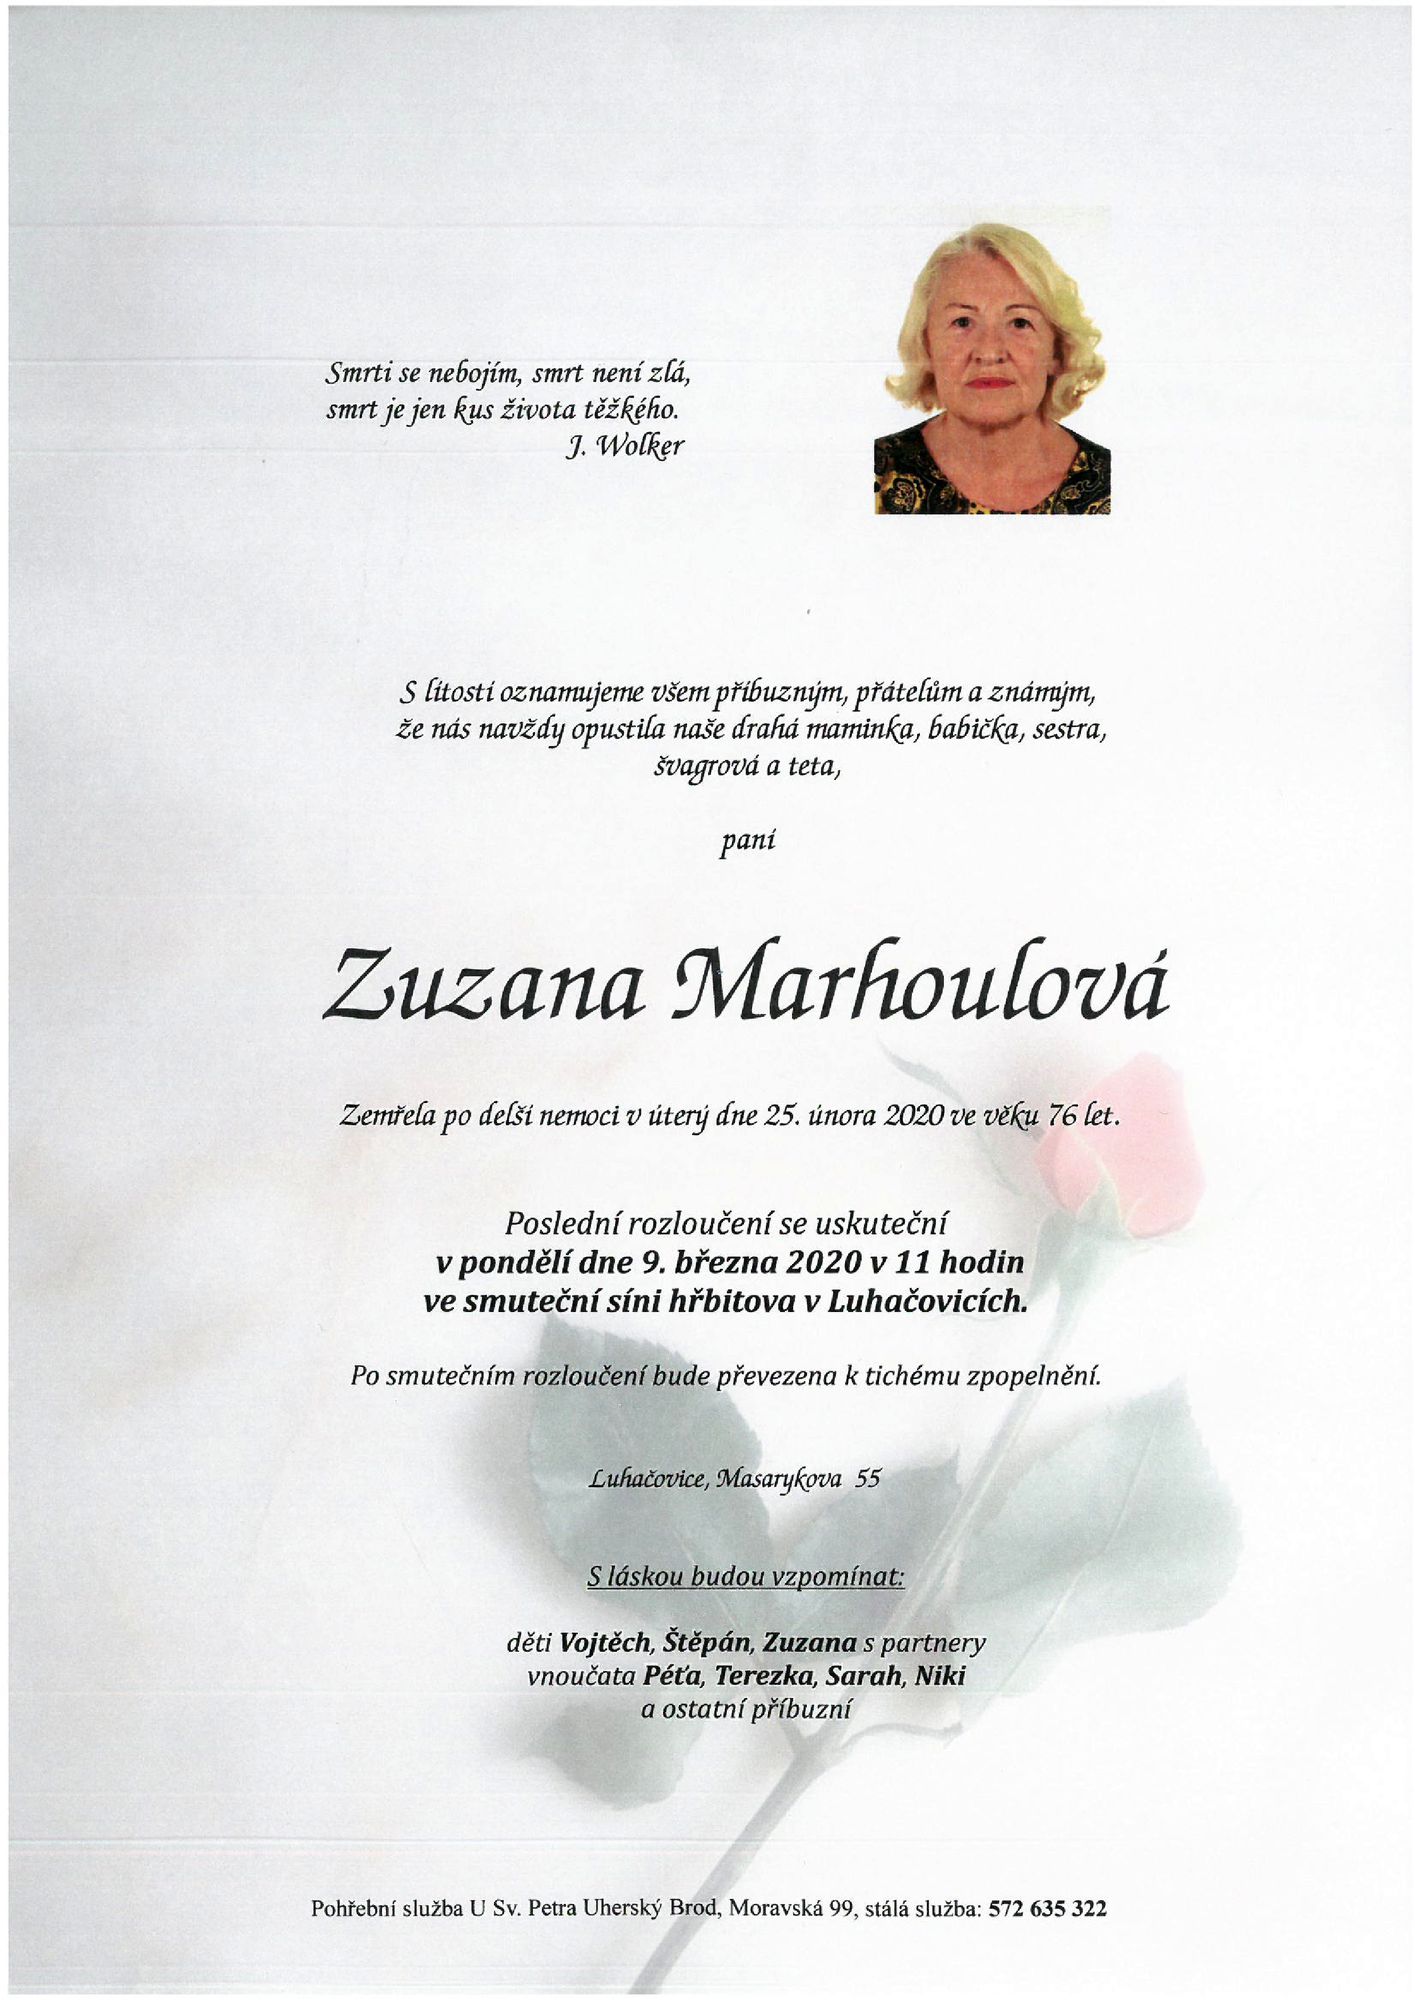 Zuzana Marhoulová